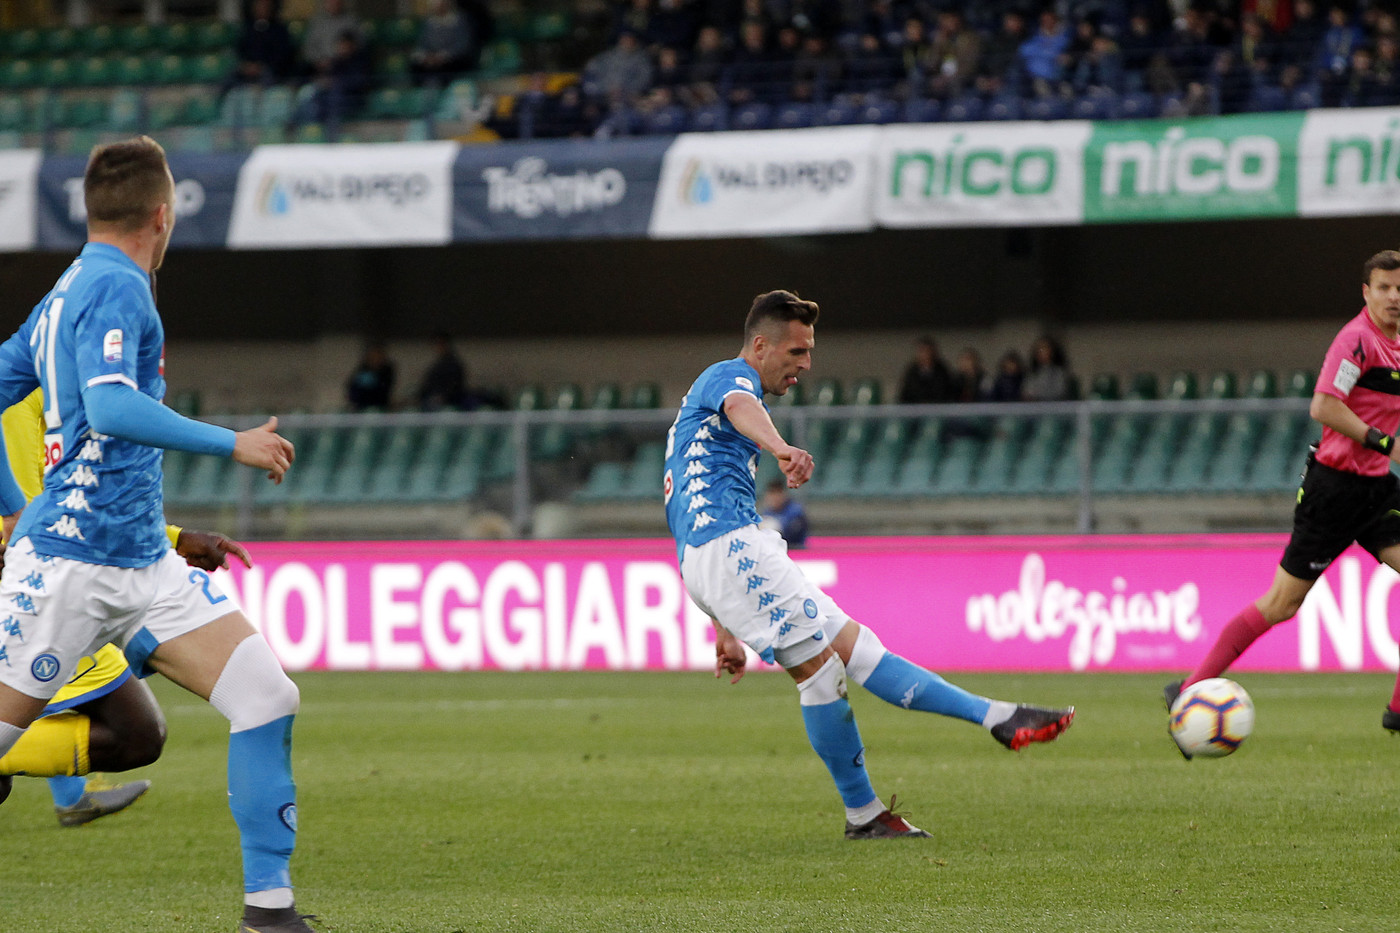 Serie A, Chievo-Napoli 1-3 | Il fotoracconto